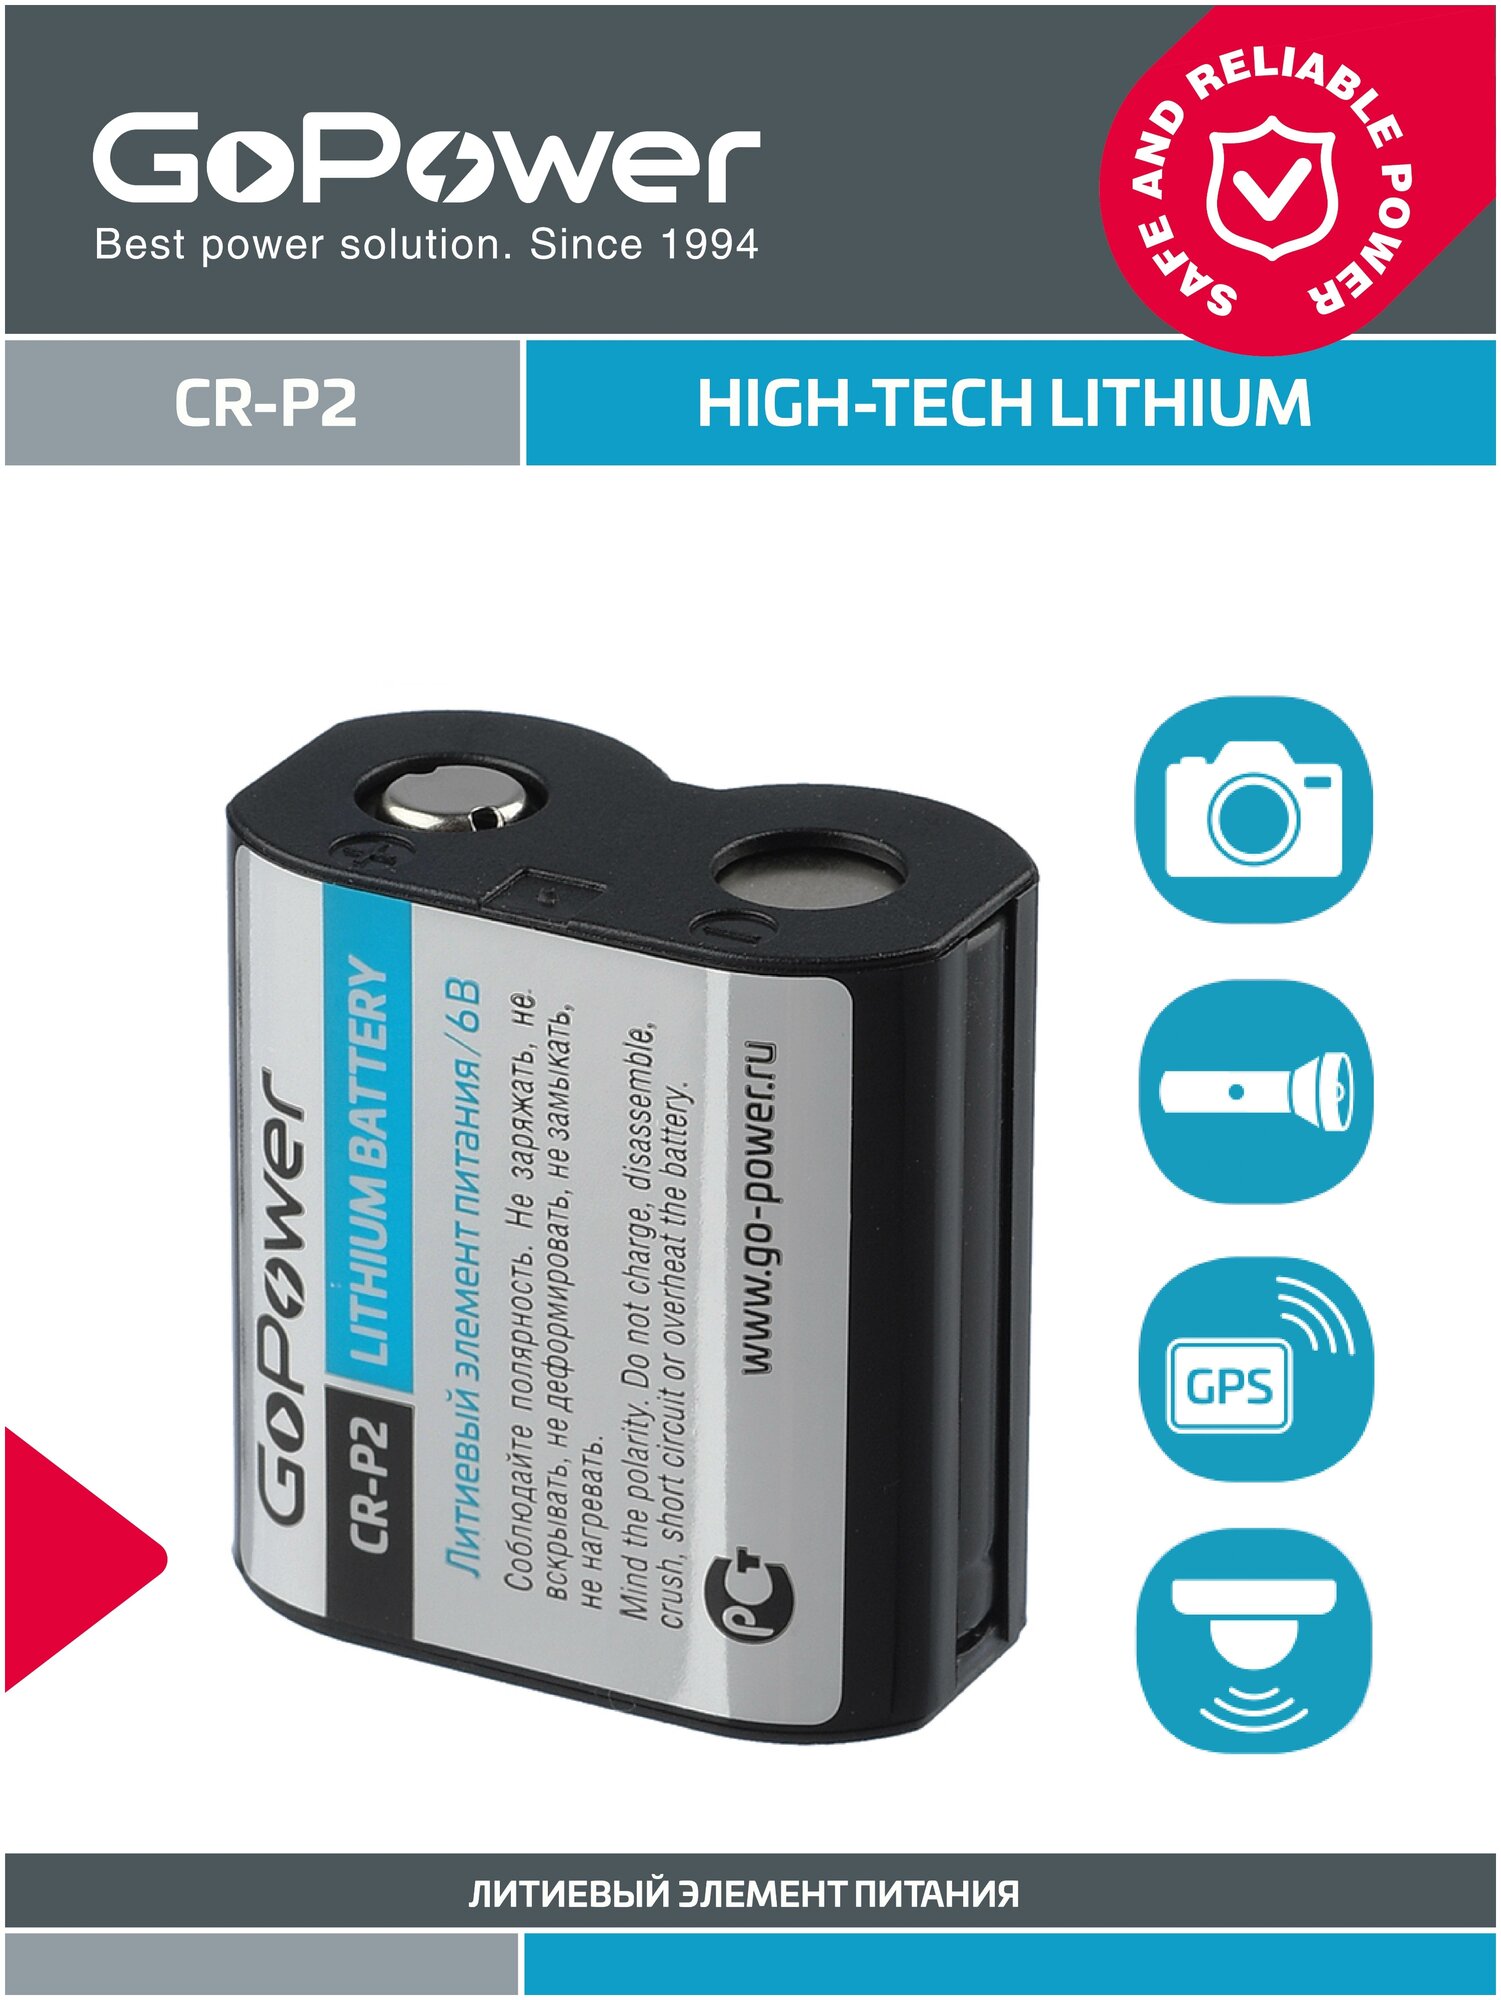 Батарейка GoPower CR-P2 Lithium 6V - 1шт.